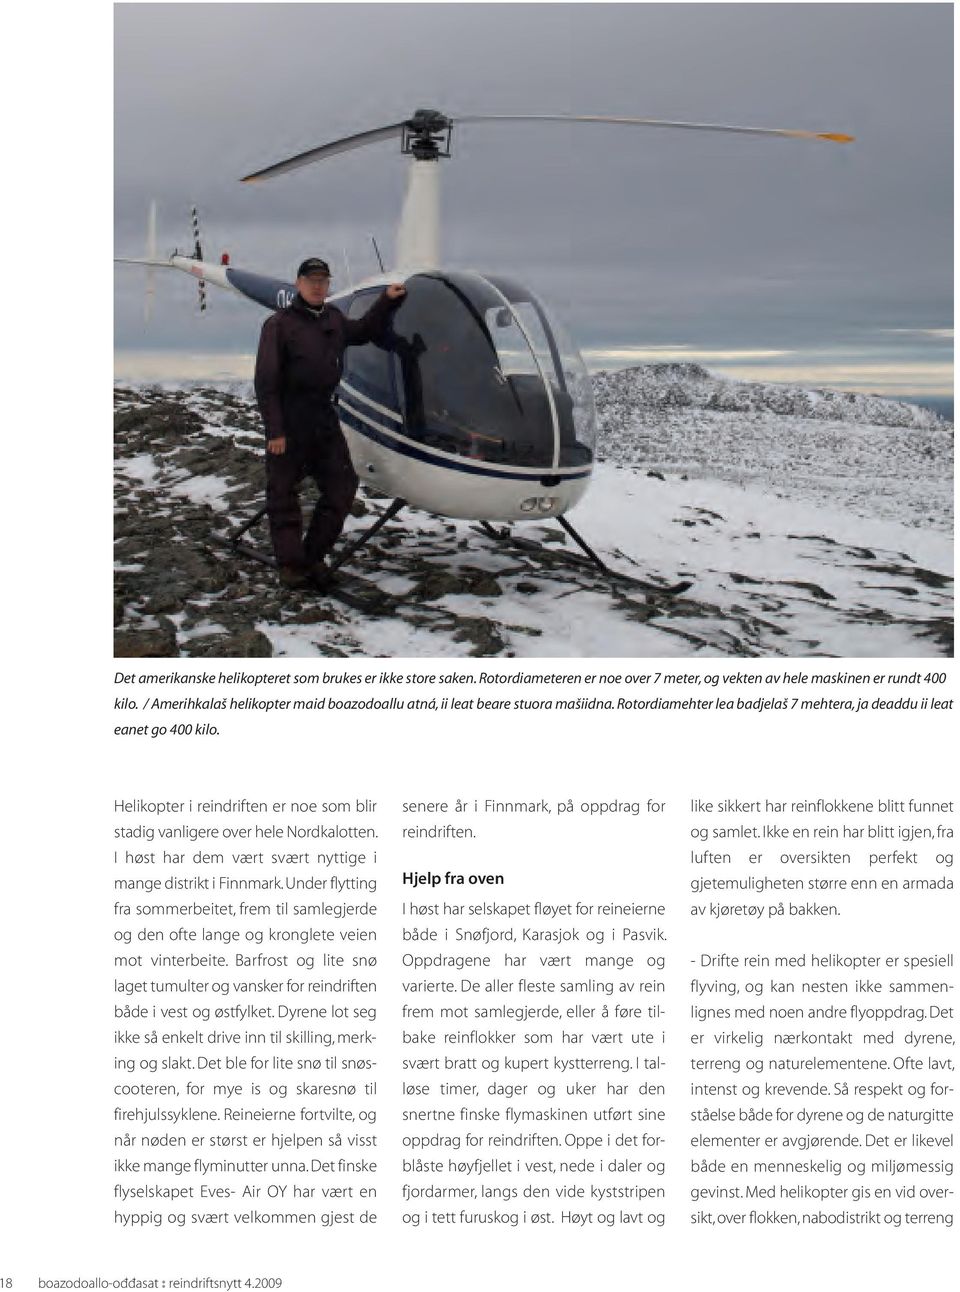 Helikopter i reindriften er noe som blir stadig vanligere over hele Nordkalotten. I høst har dem vært svært nyttige i mange distrikt i Finnmark.